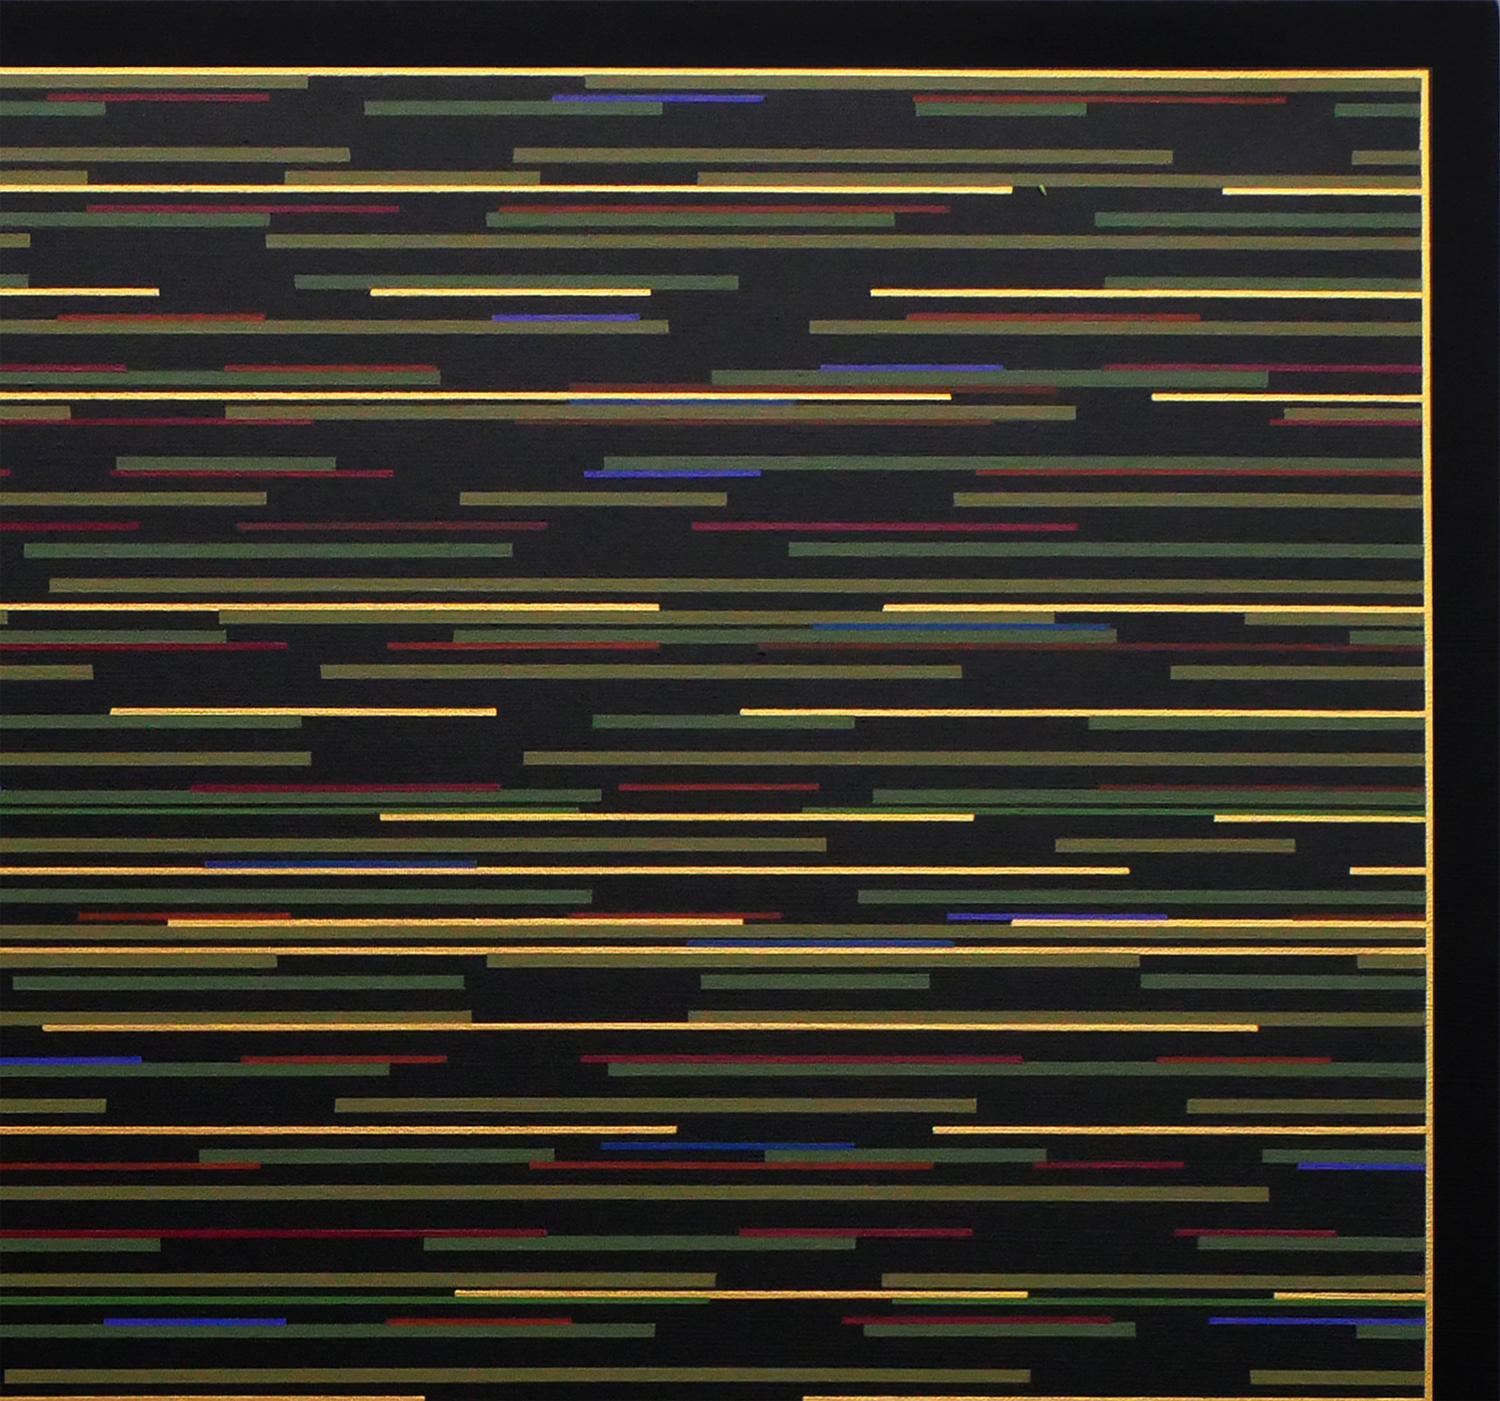 Peinture géométrique abstraite contemporaine de l'artiste Mark Byckowski. L'œuvre est présentée dans une série de tableaux. L'œuvre présente des lignes horizontales avec une variété de couleurs vives de vert, jaune et bleu sur un fond noir. Chaque